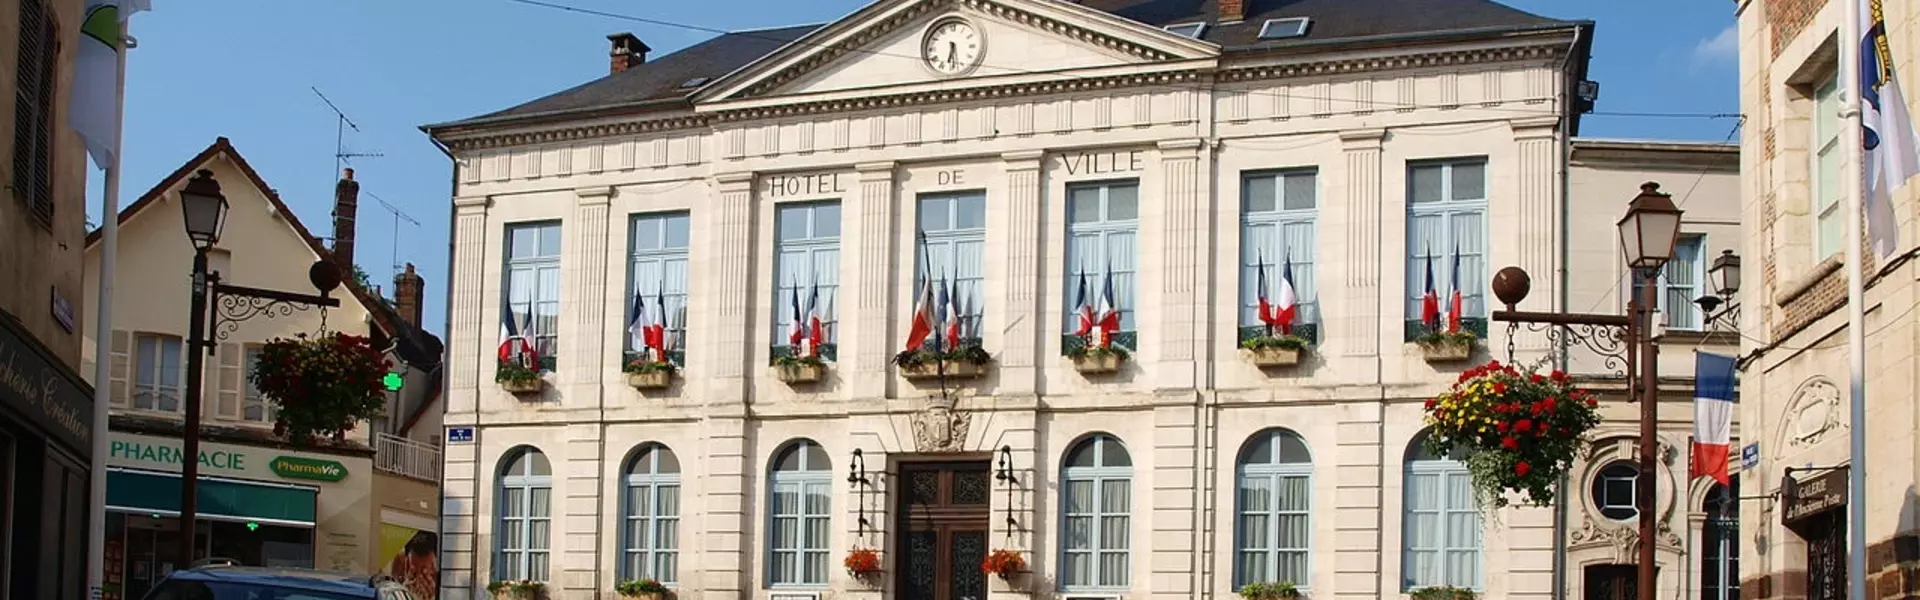 Le mot du maire de la commune de Toucy (89) Yonne